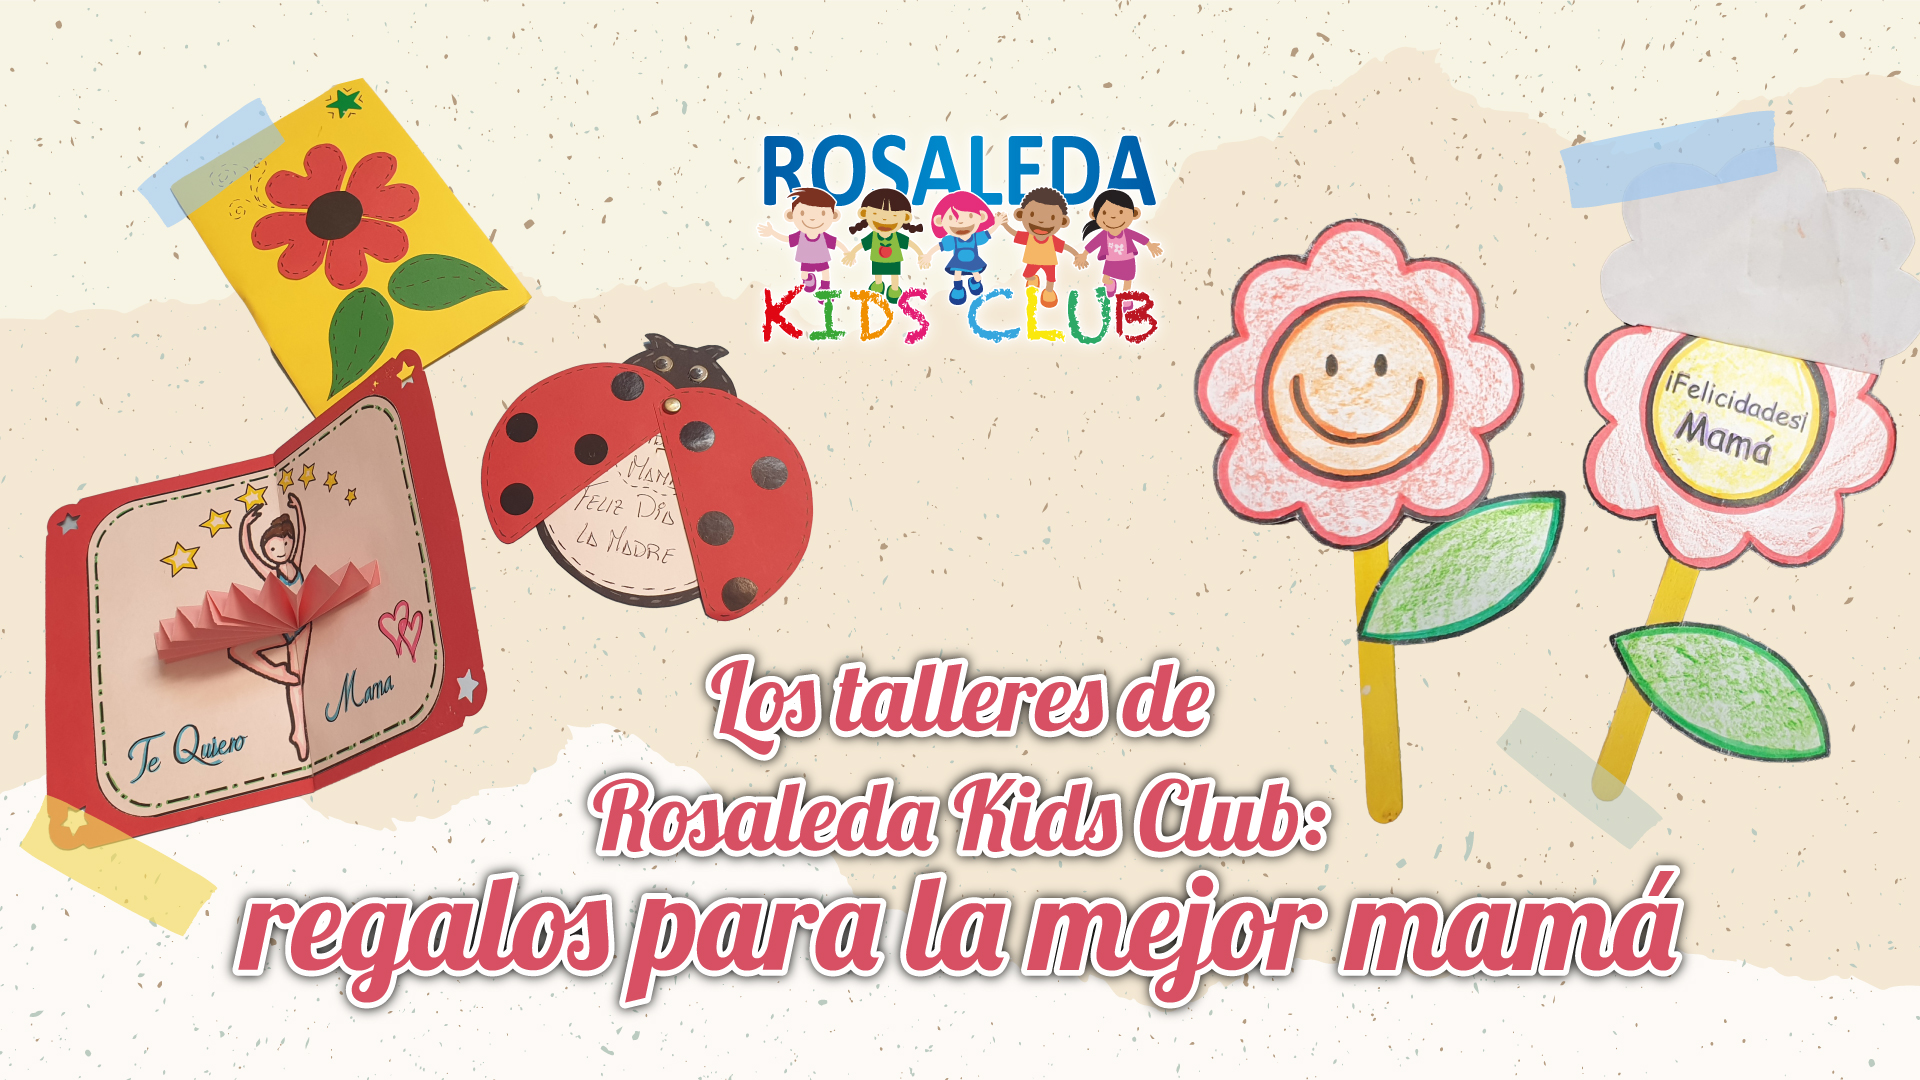 Rosaleda Kids Club: regalos para la mejor mamá